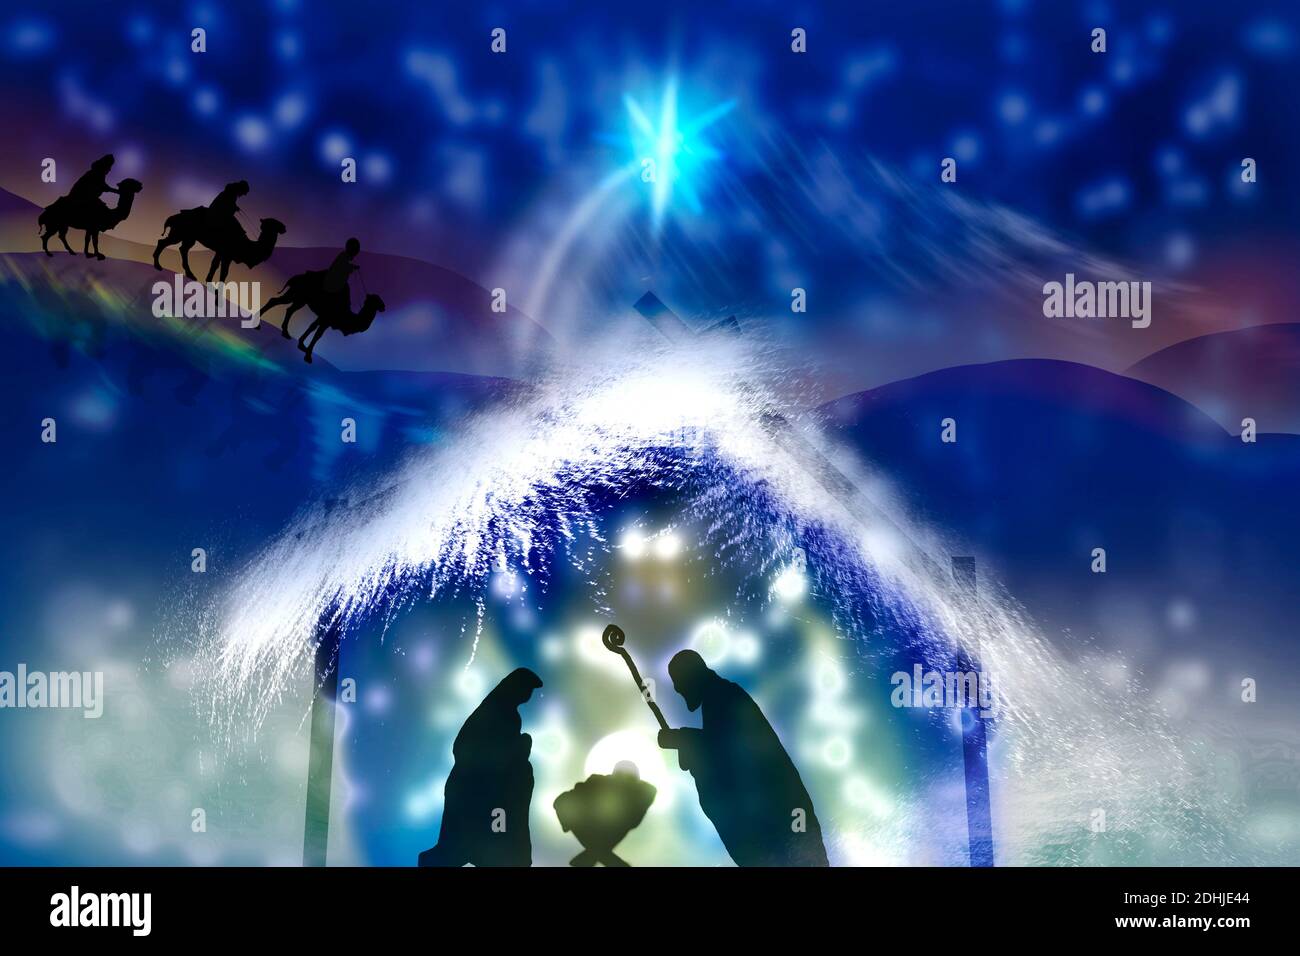 Weihnachtskrippe mit dem Jesuskind in der Krippe und Maria mit Joseph. Weihnachten Hintergrund. Stockfoto